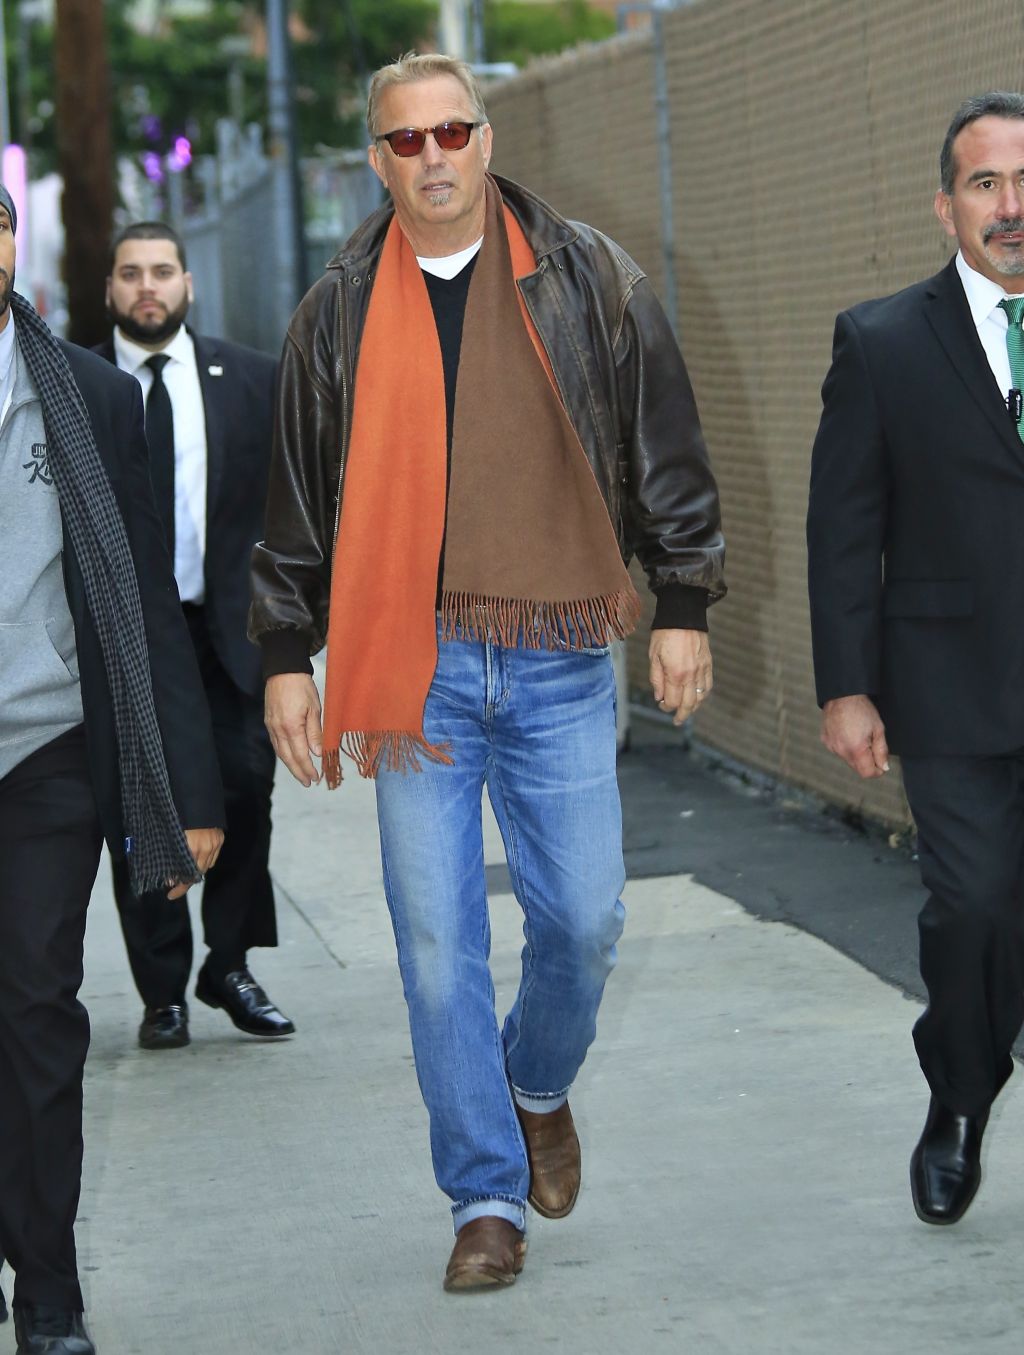 Kevin Costner arrives at the Jimmy Kimmel studios